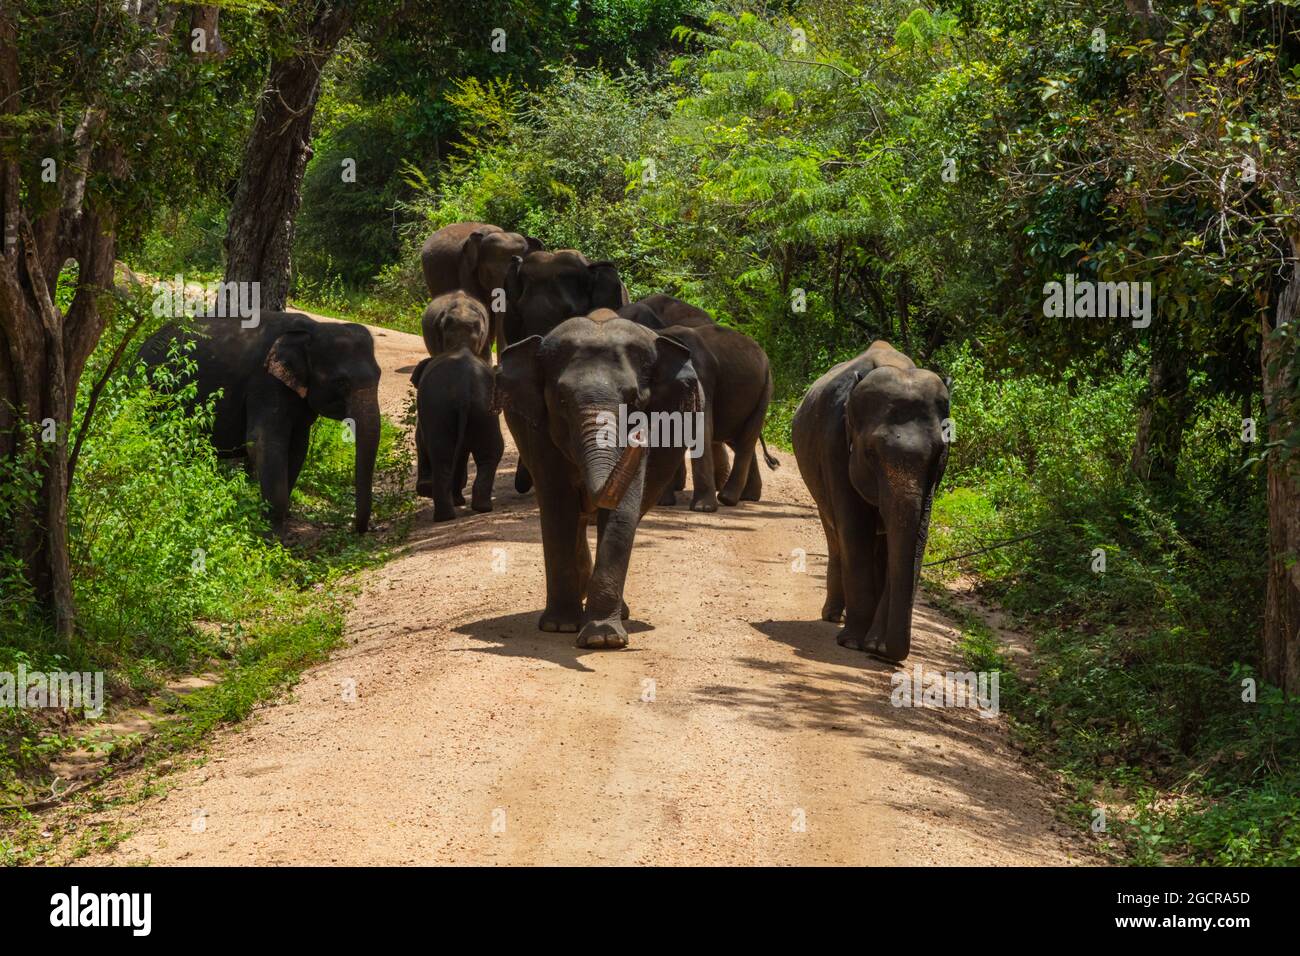 Freie wilde Elefanten im Nationalpark Minniya, Sri Lanka. Elefantenherde, die über einen nicht versiegelten Pfad geht, bevor sie im Busch der ra zurückwandern Stockfoto